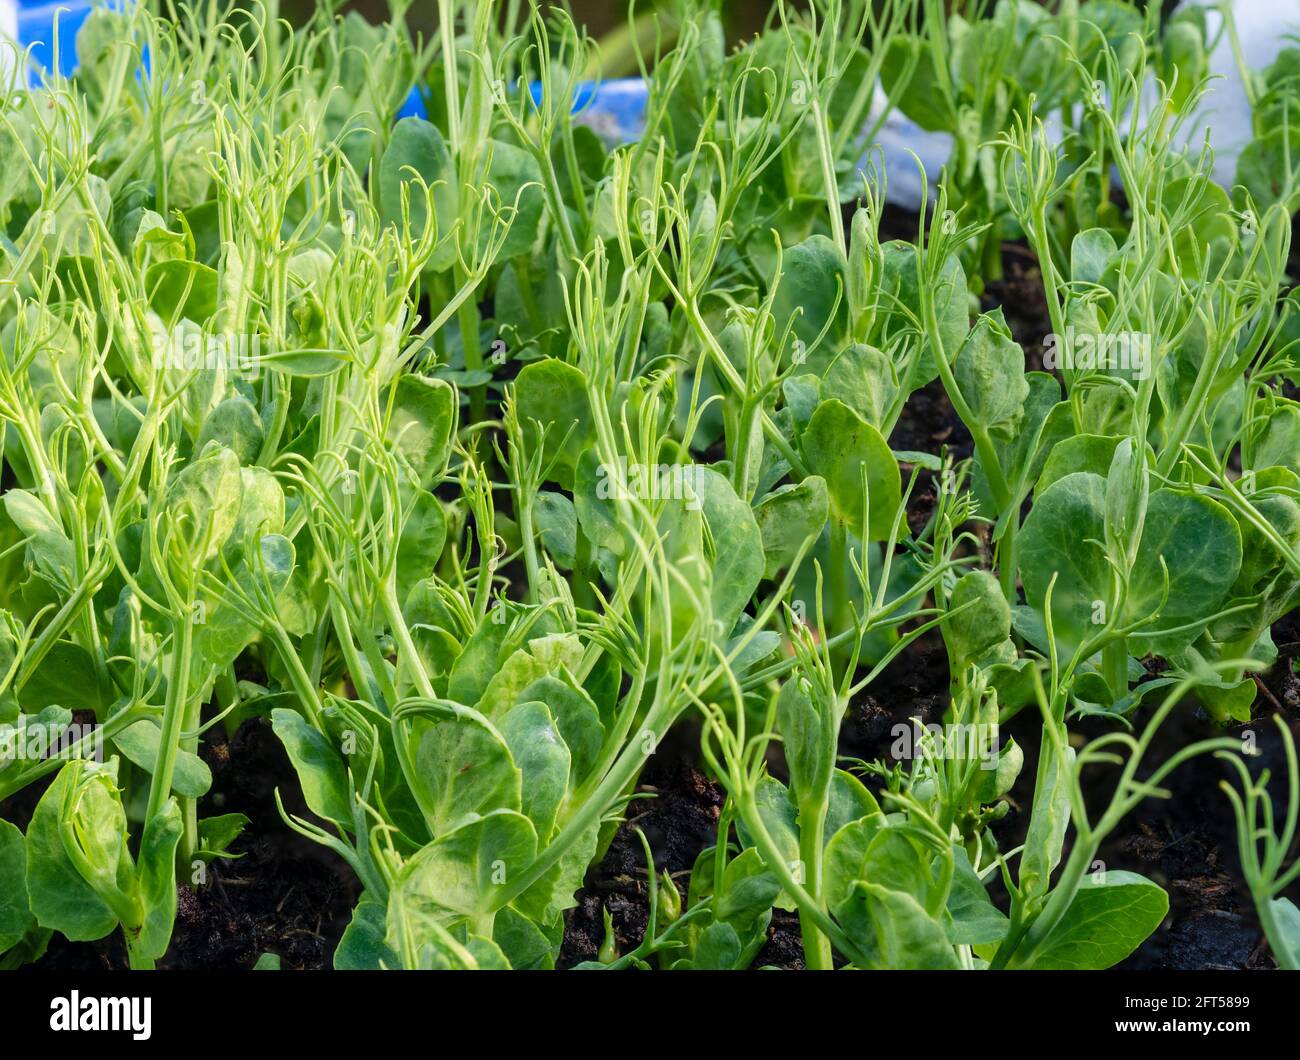 Marrowfat garden peas, Pisum sativum, grown for edible pea sprouts in a small UK kitchen garden Stock Photo